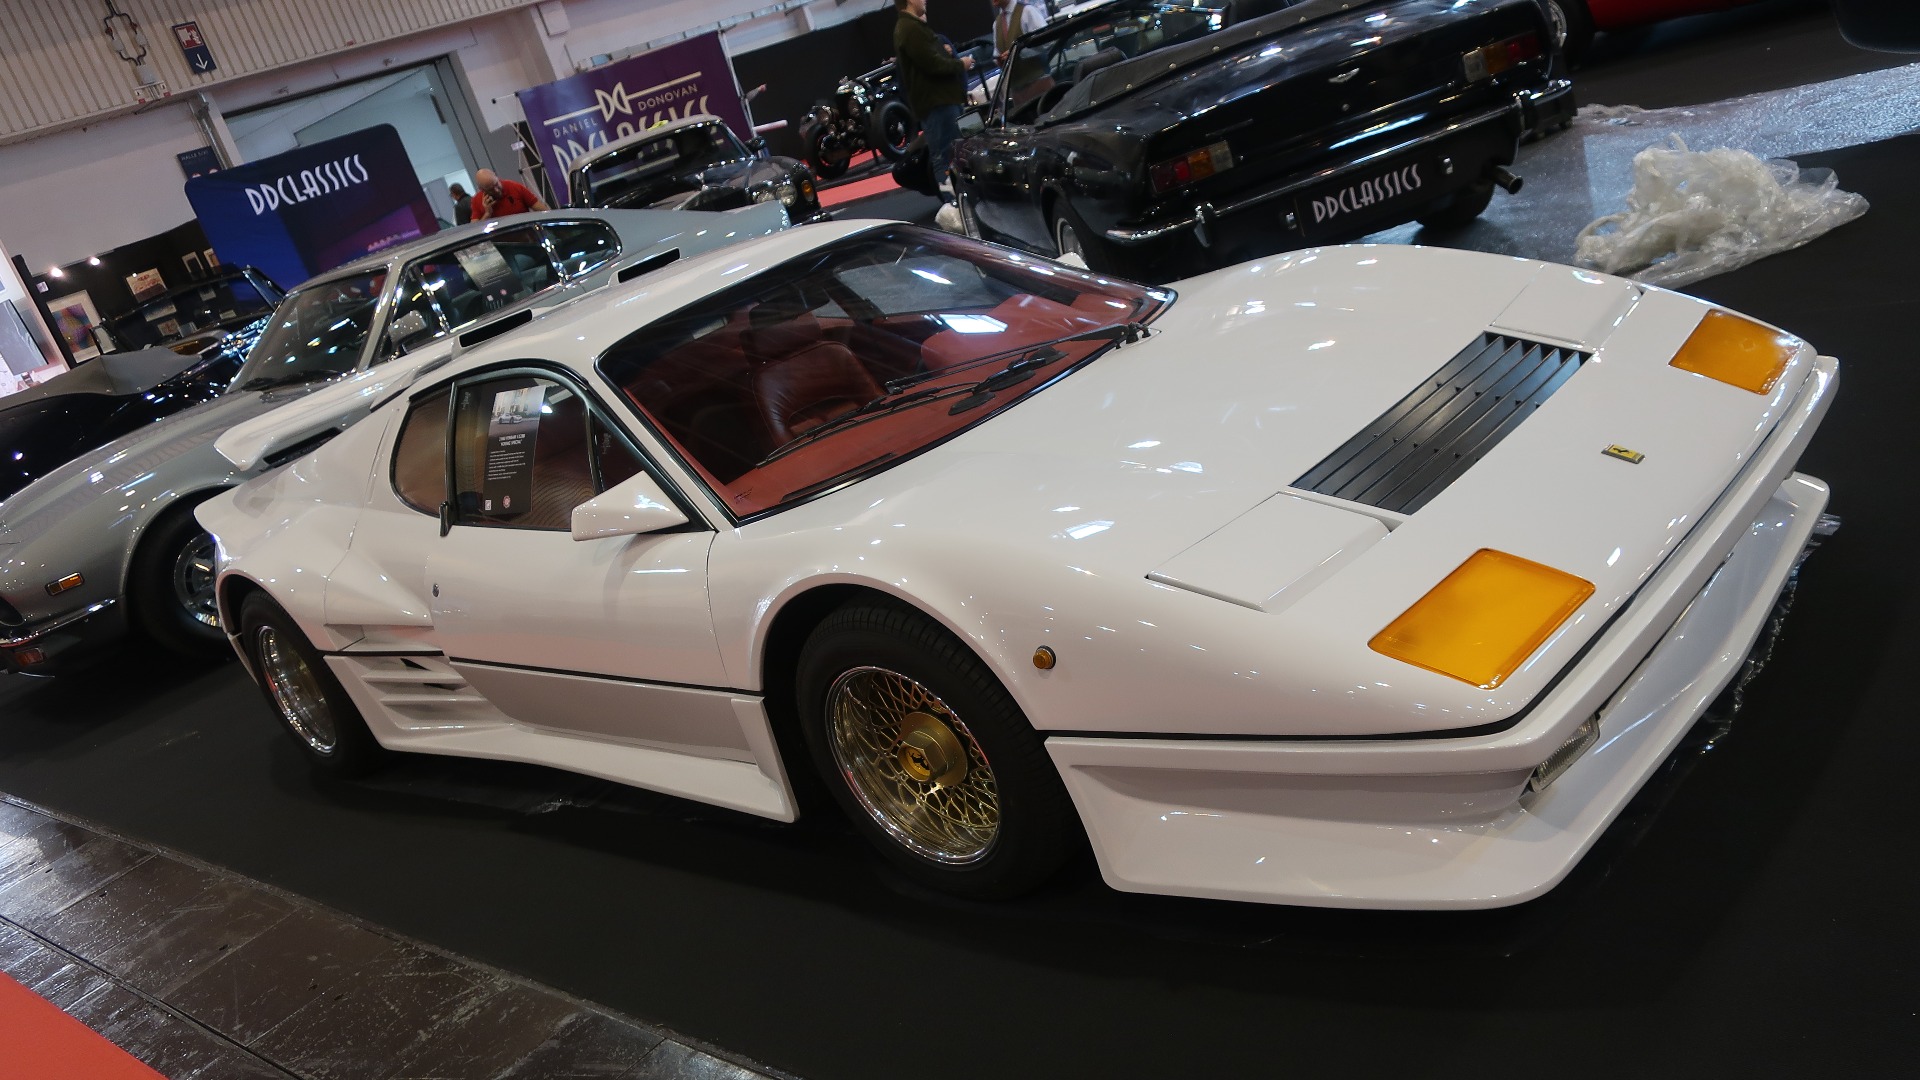 80-tallet var sikkert harry, men du verden så vidunderlig harry det var, noe denne Koenig Ferrari BB illustrerer.